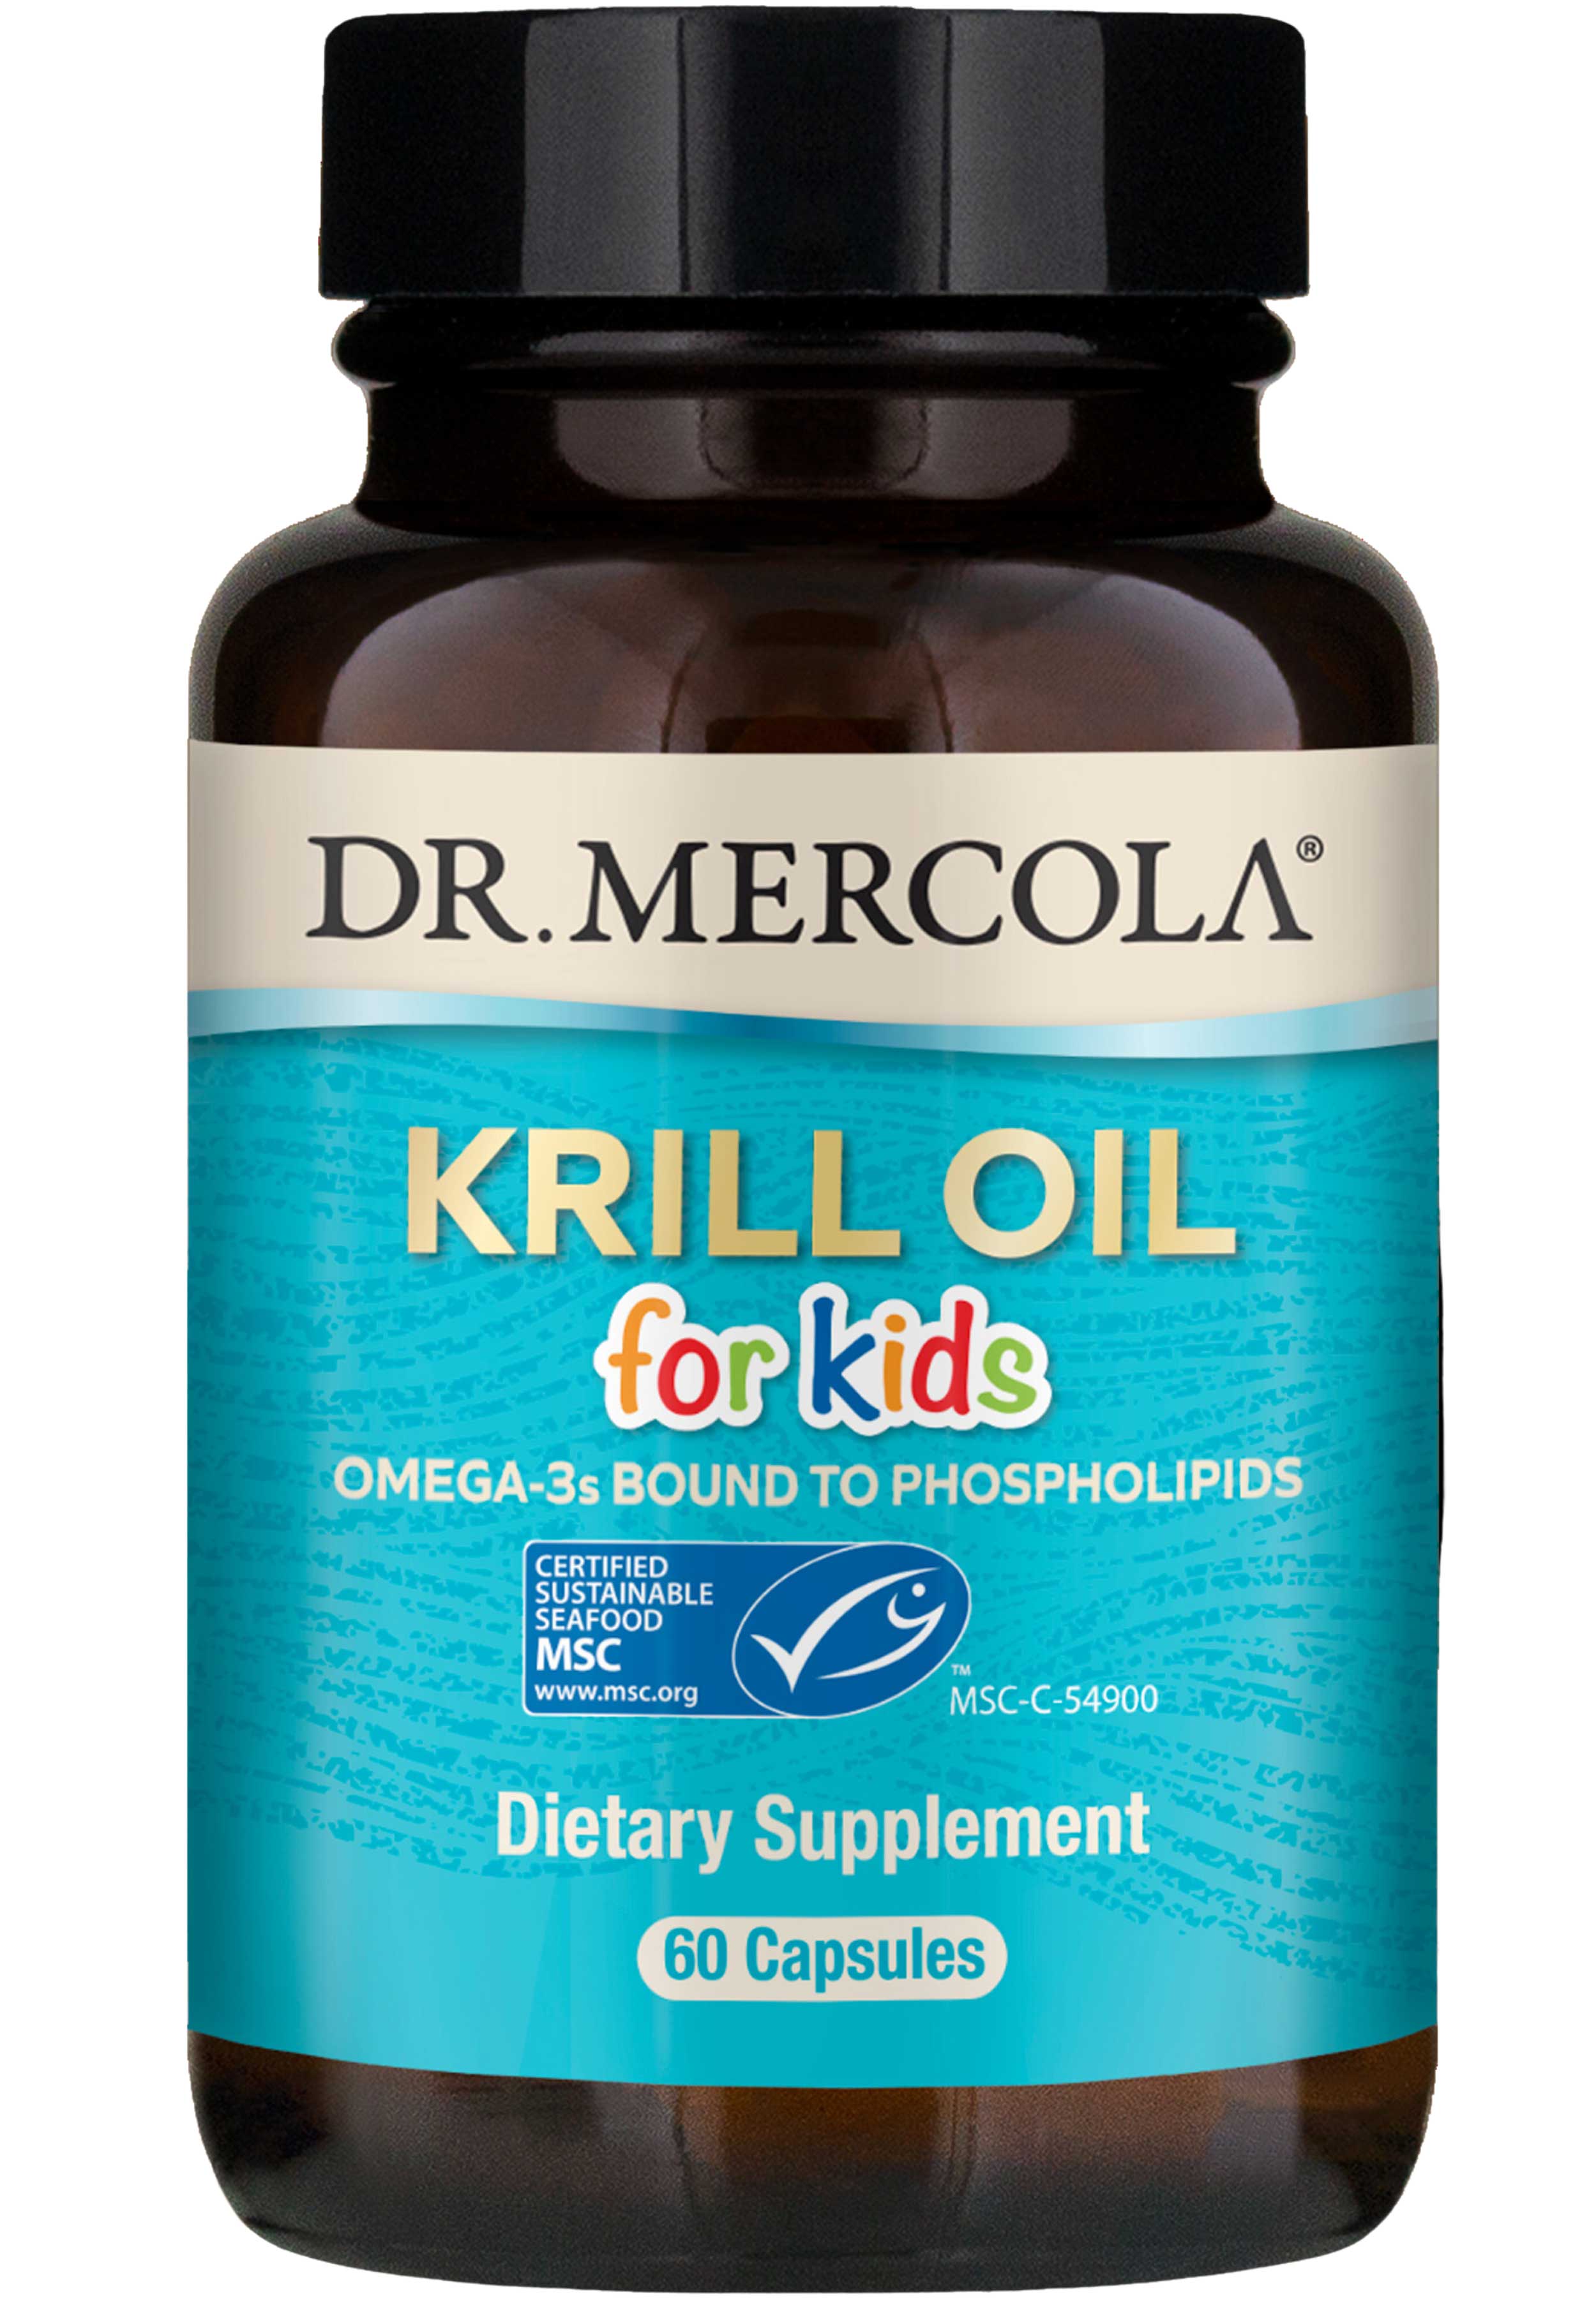 Dr. Mercola Krill Oil for Kids